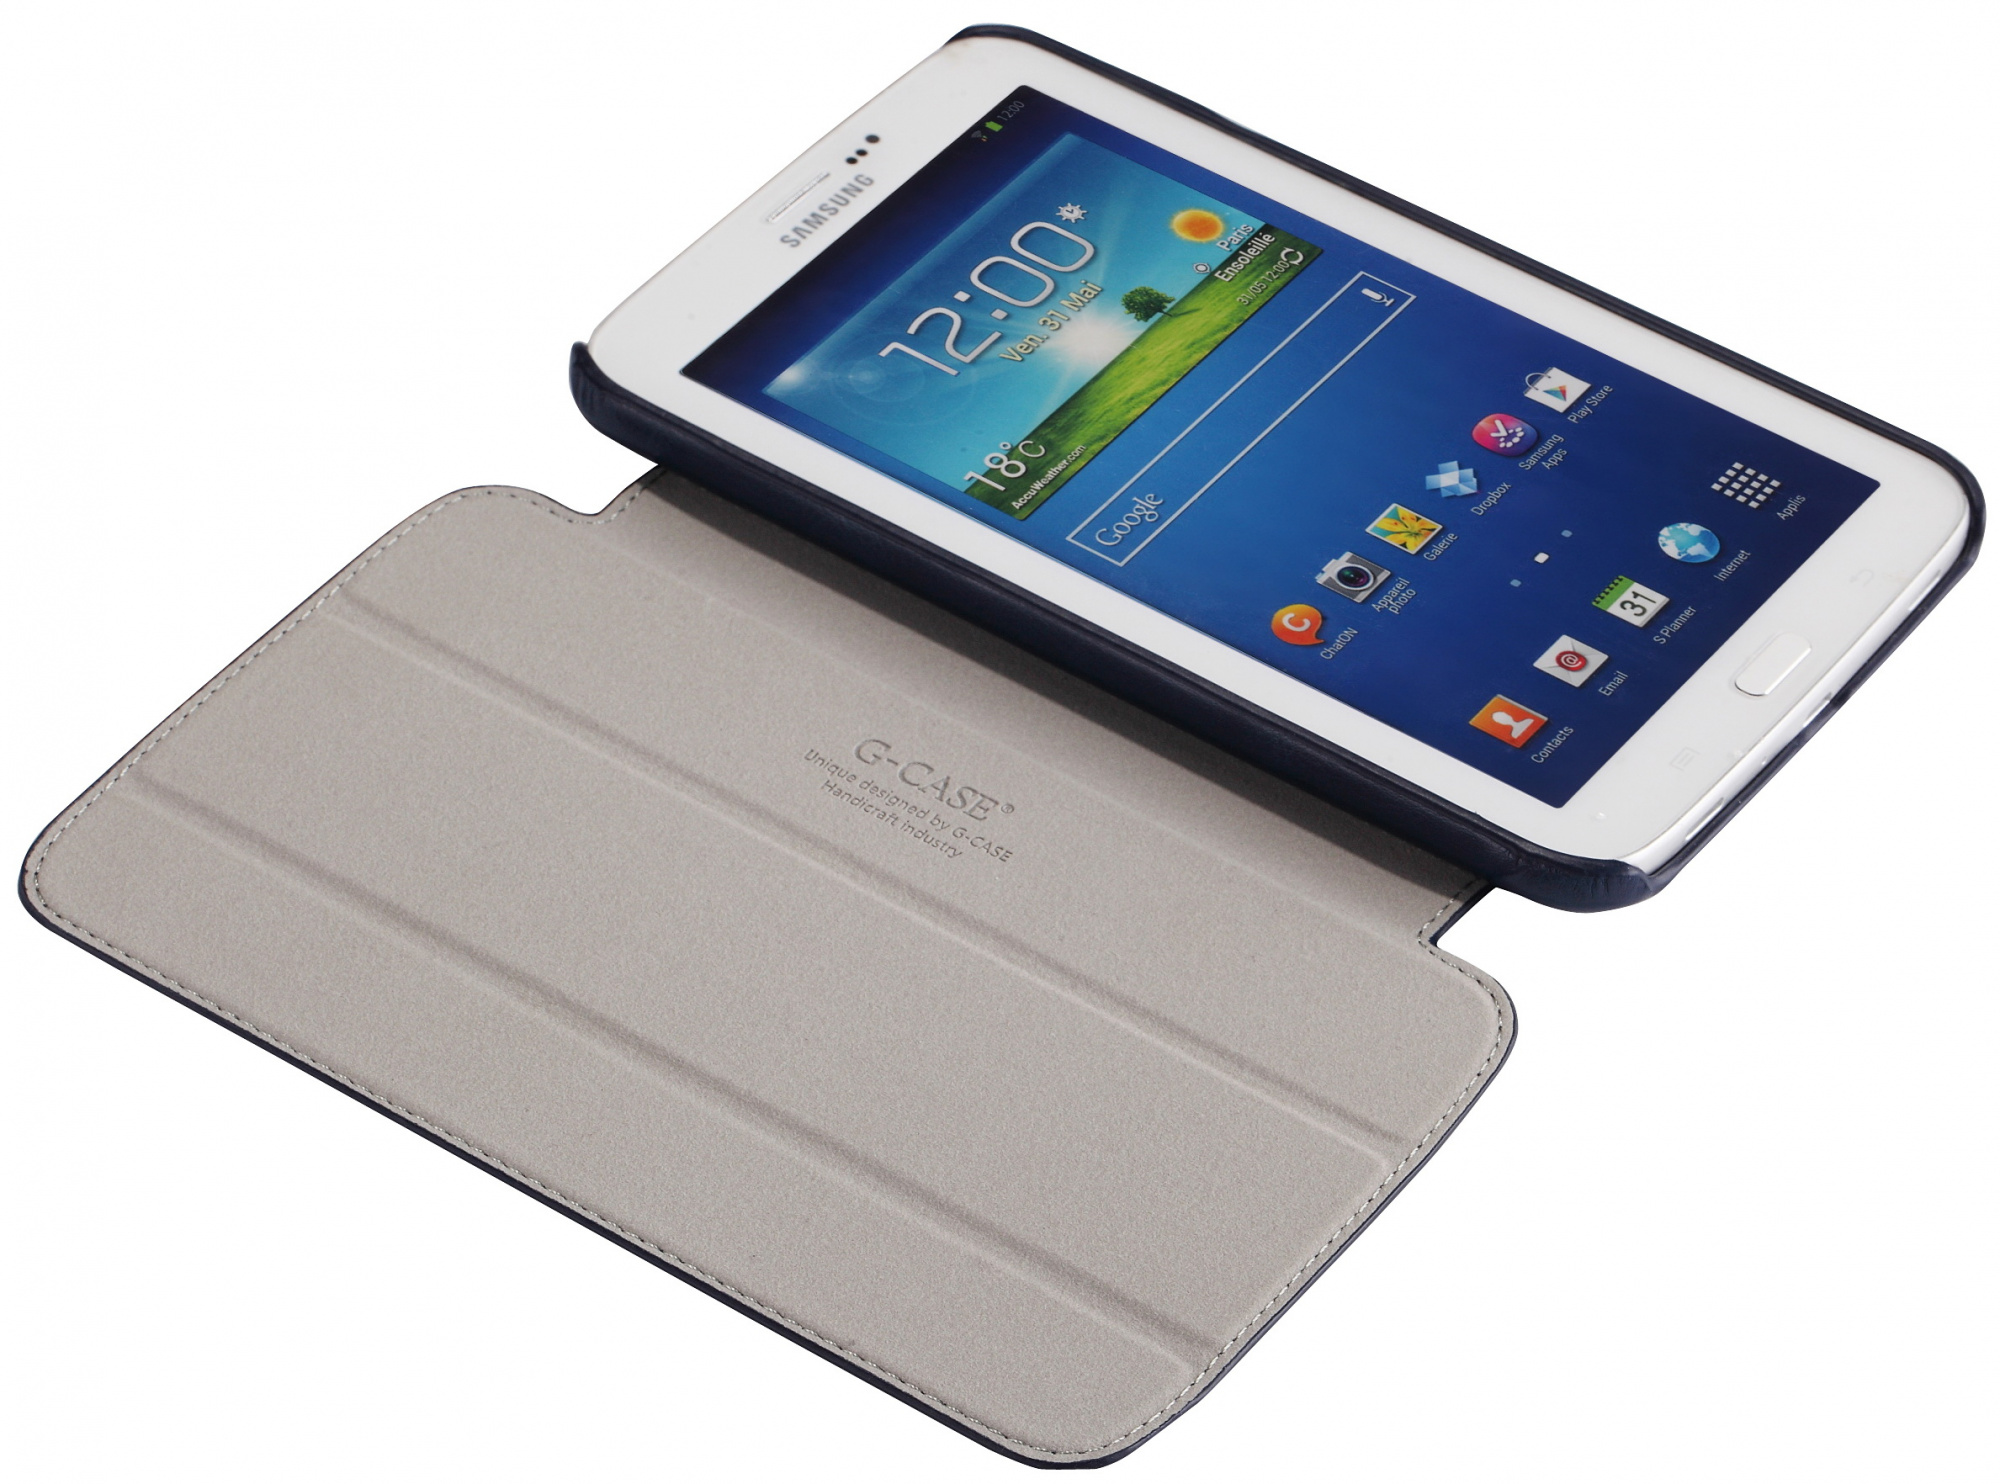 Galaxy 3 8.0. Samsung Galaxy Tab 3. Samsung Galaxy Tab 3 7. Galaxy Tab 3 7.0. Чехол самсунг галакси tab3.